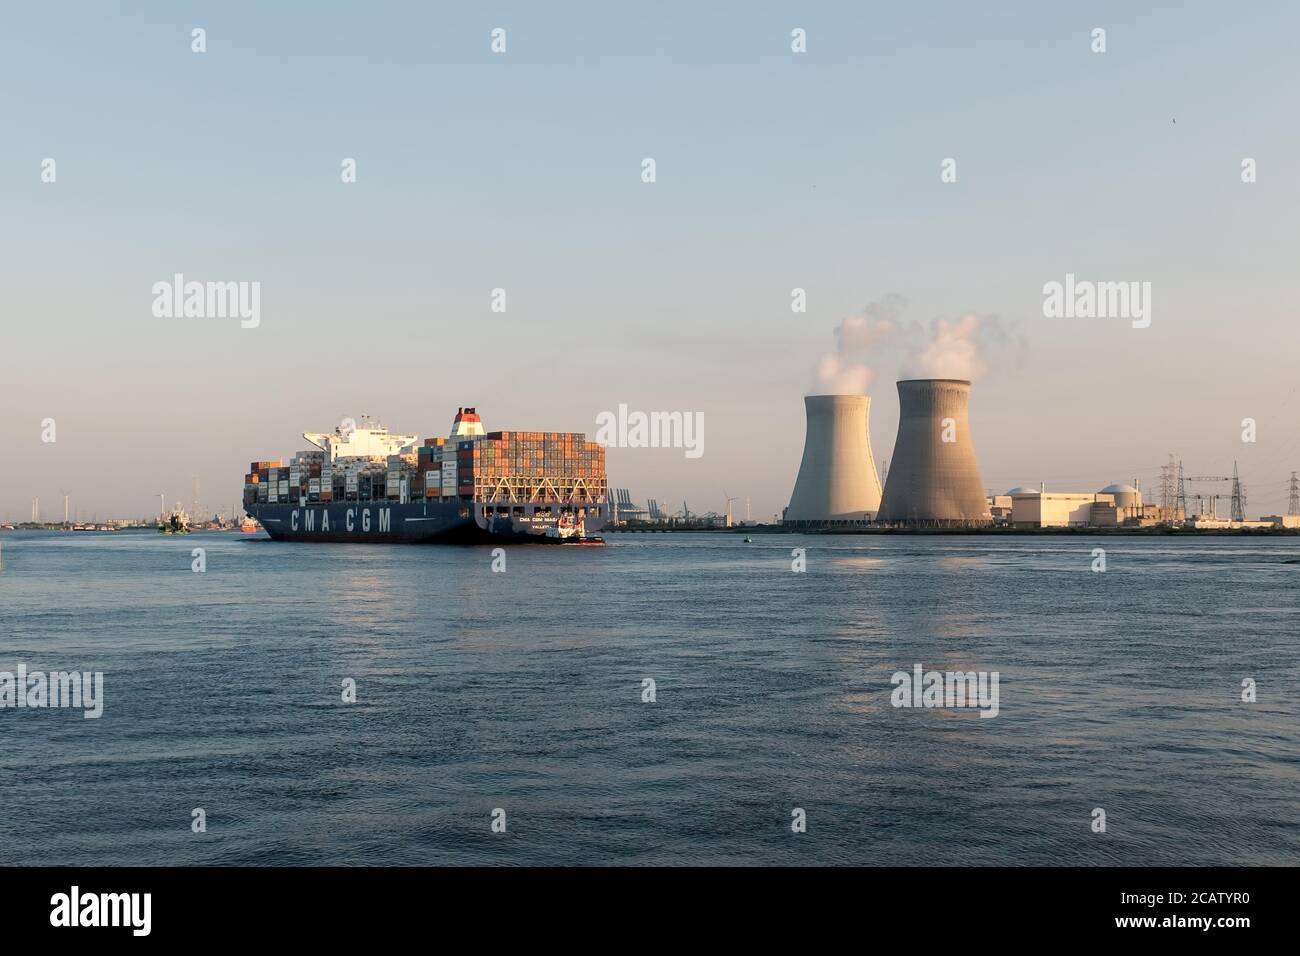 Grand navire à conteneurs CMA CGM Niagara naviguant au-delà du nucléaire Centrale électrique de Doel dans le port d'Anvers Banque D'Images